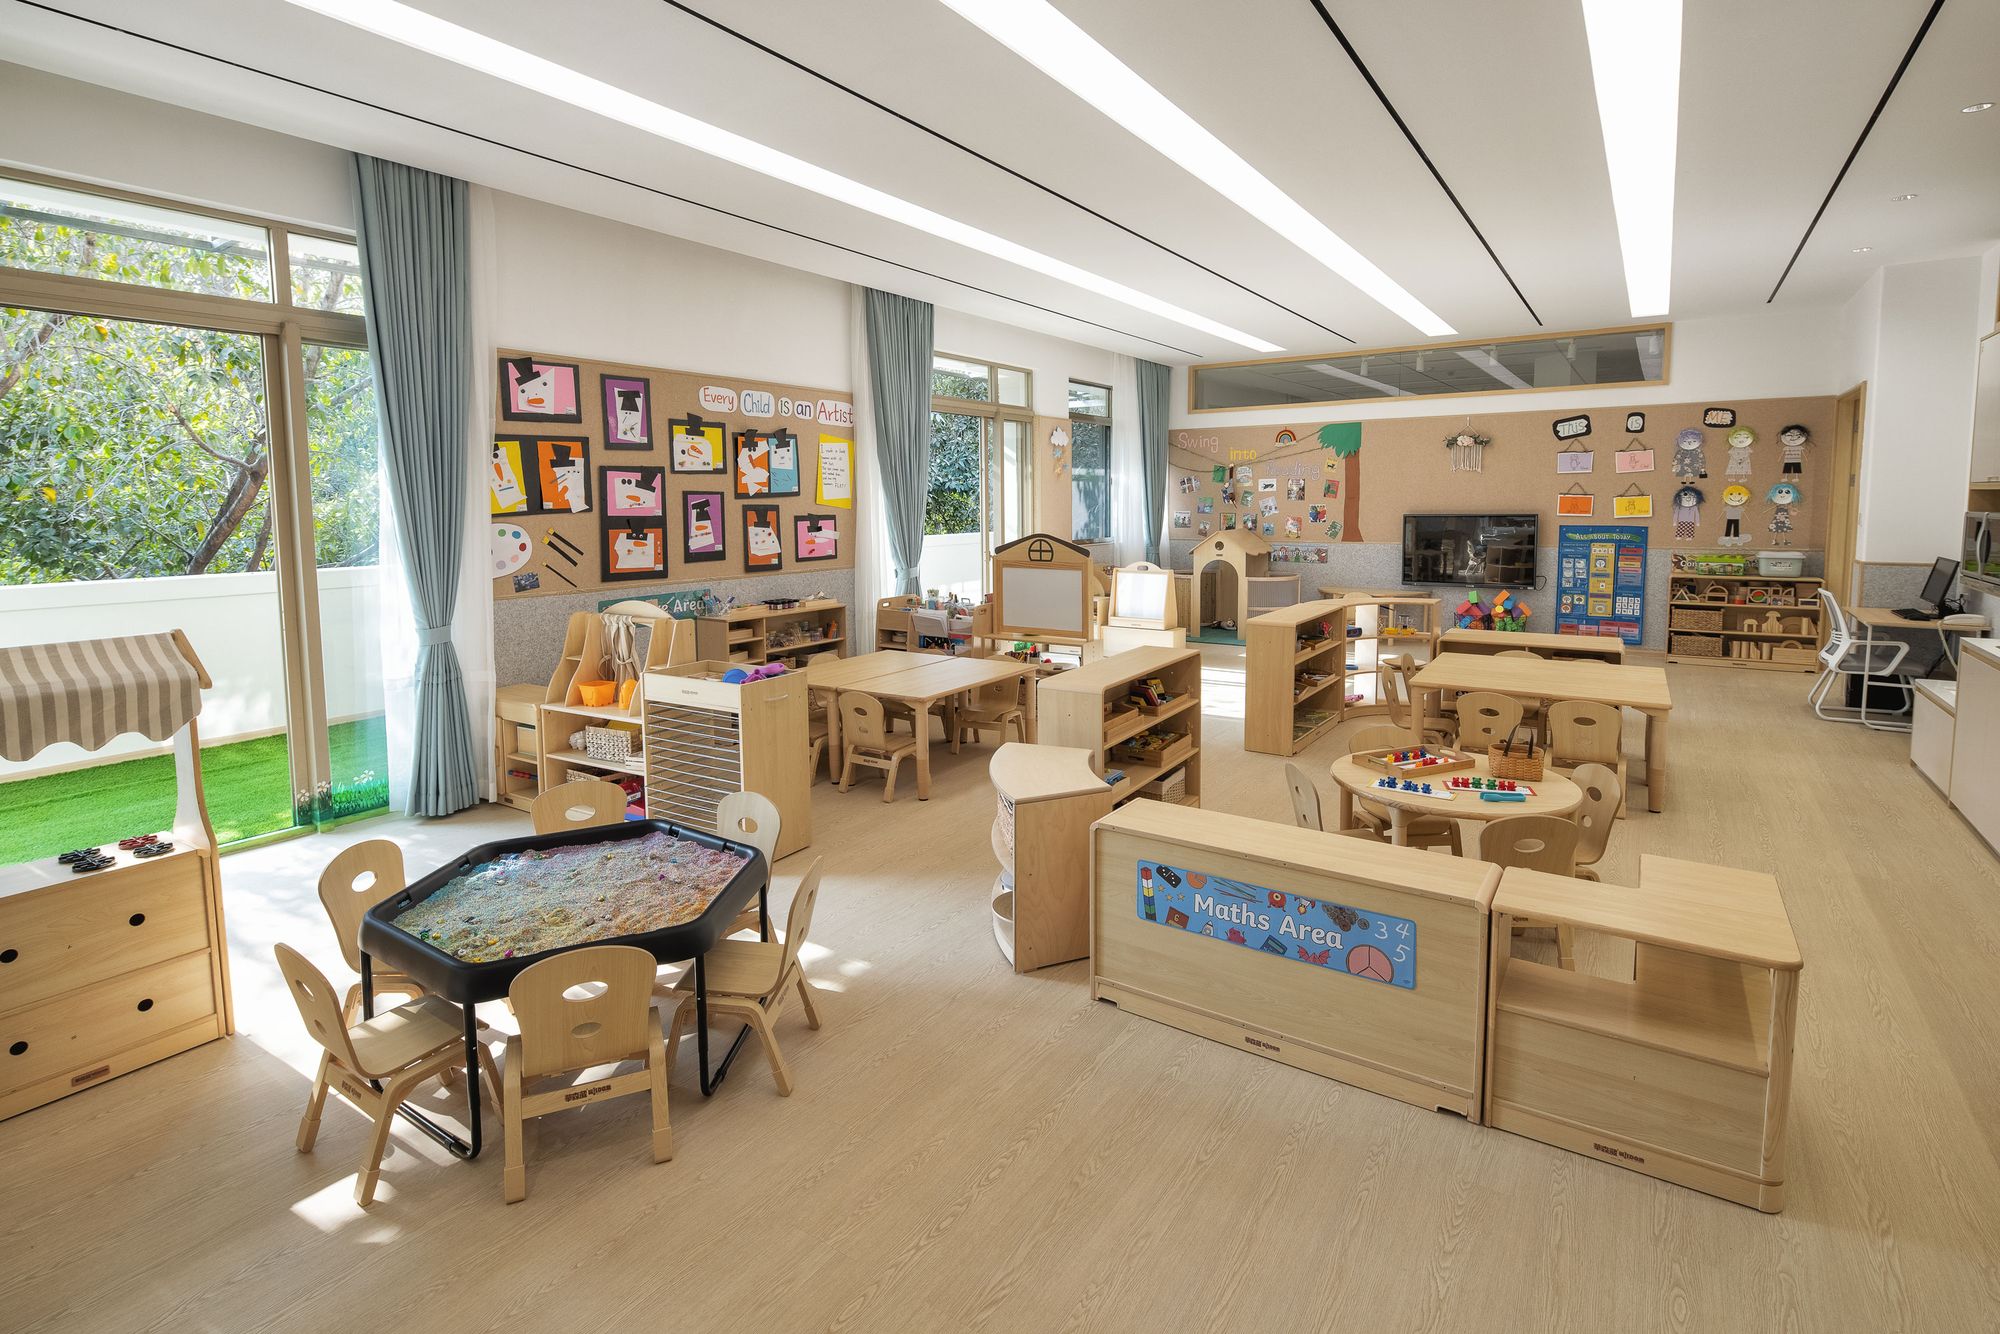 图片[13]|皇冠梦想国际幼儿园|ART-Arrakis | 建筑室内设计的创新与灵感